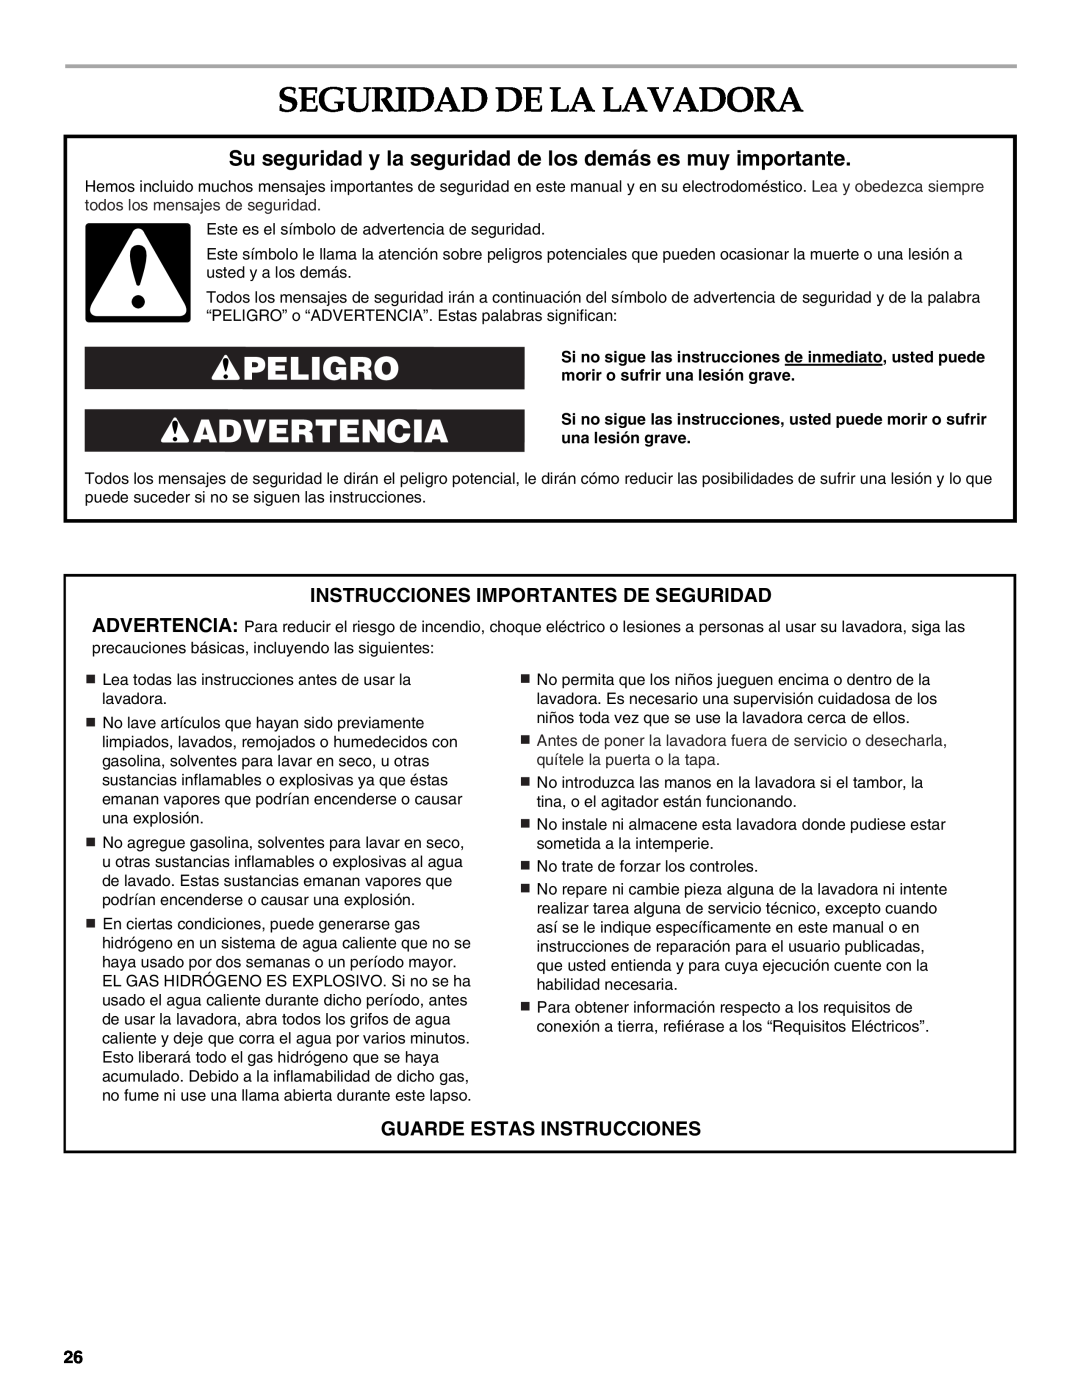 Maytag 8182969 Seguridad De La Lavadora, Peligro Advertencia, Su seguridad y la seguridad de los demás es muy importante 